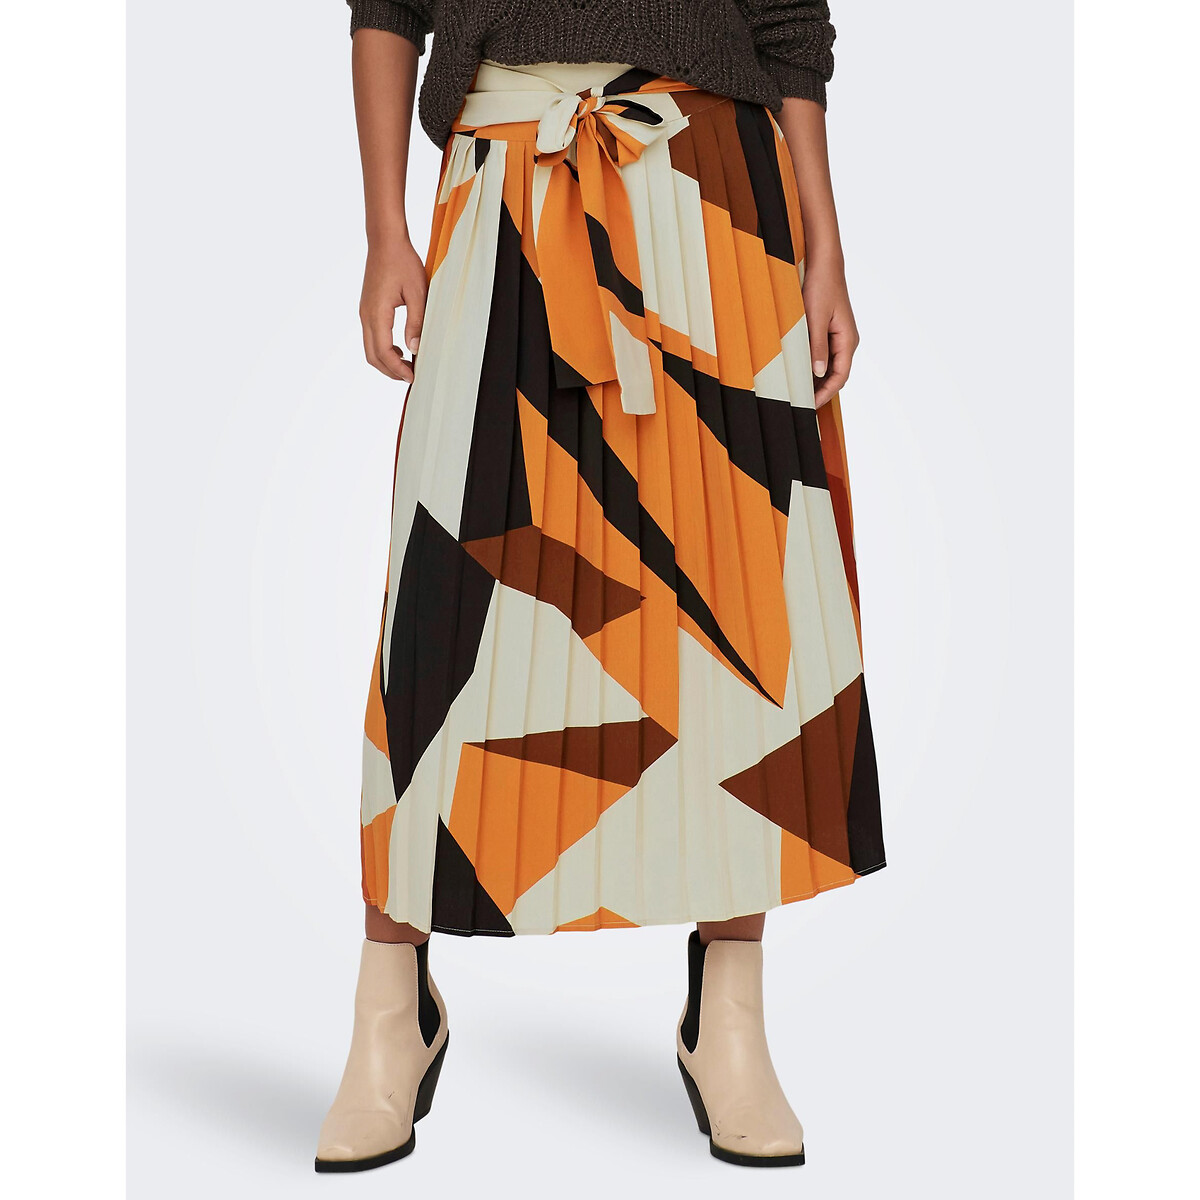 Image of Printed High Waist Skirt